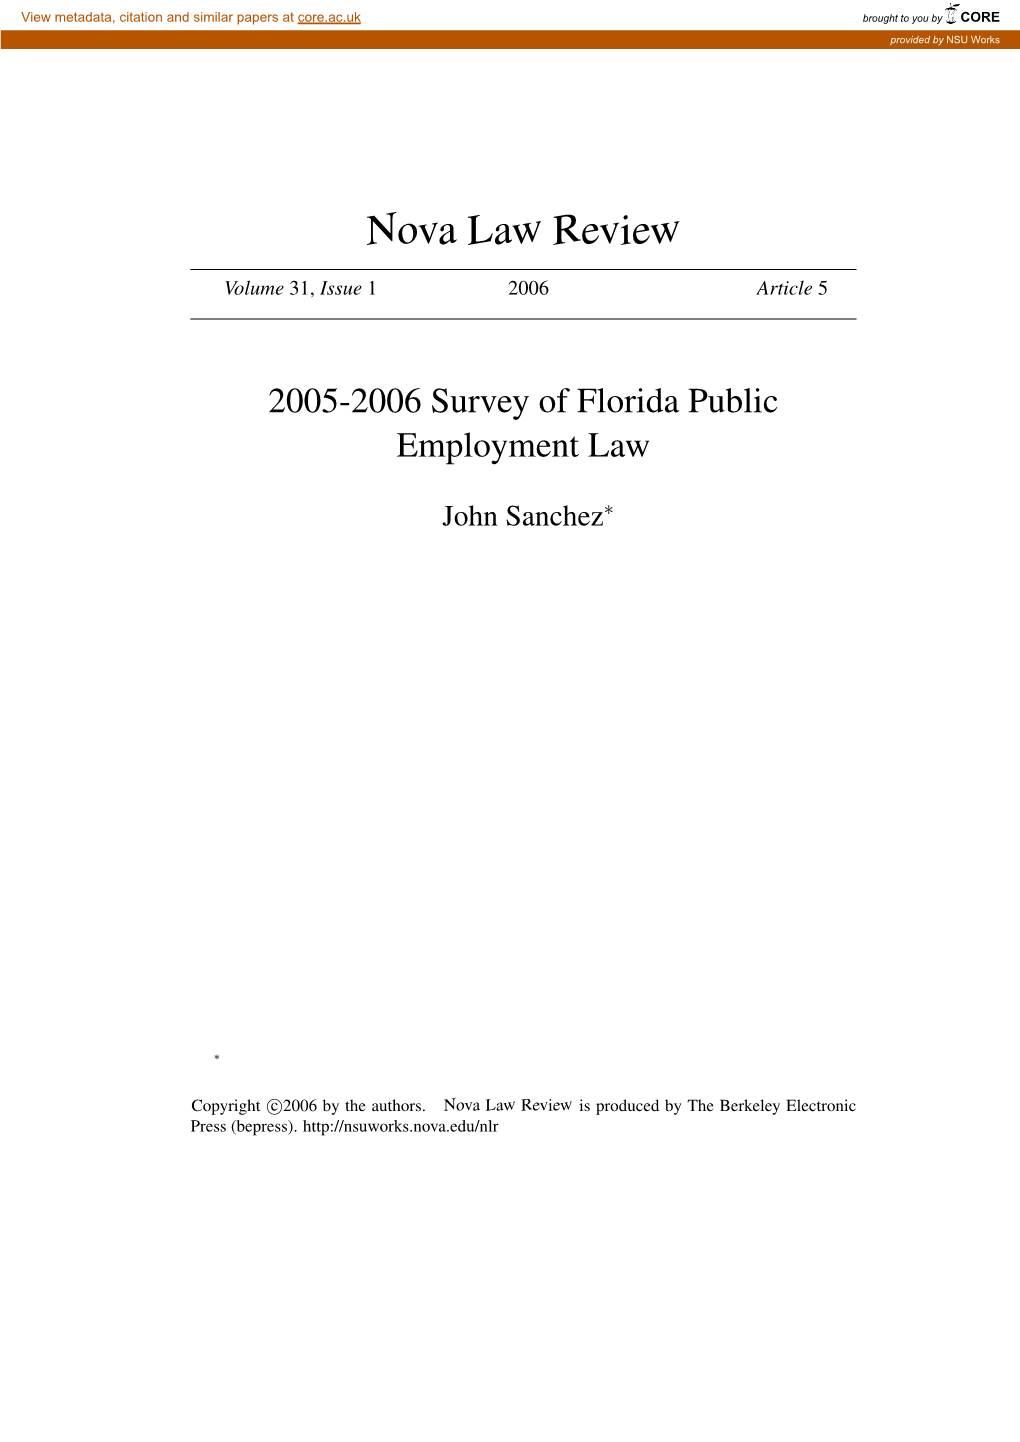 2005-2006 Survey of Florida Public Employment Law